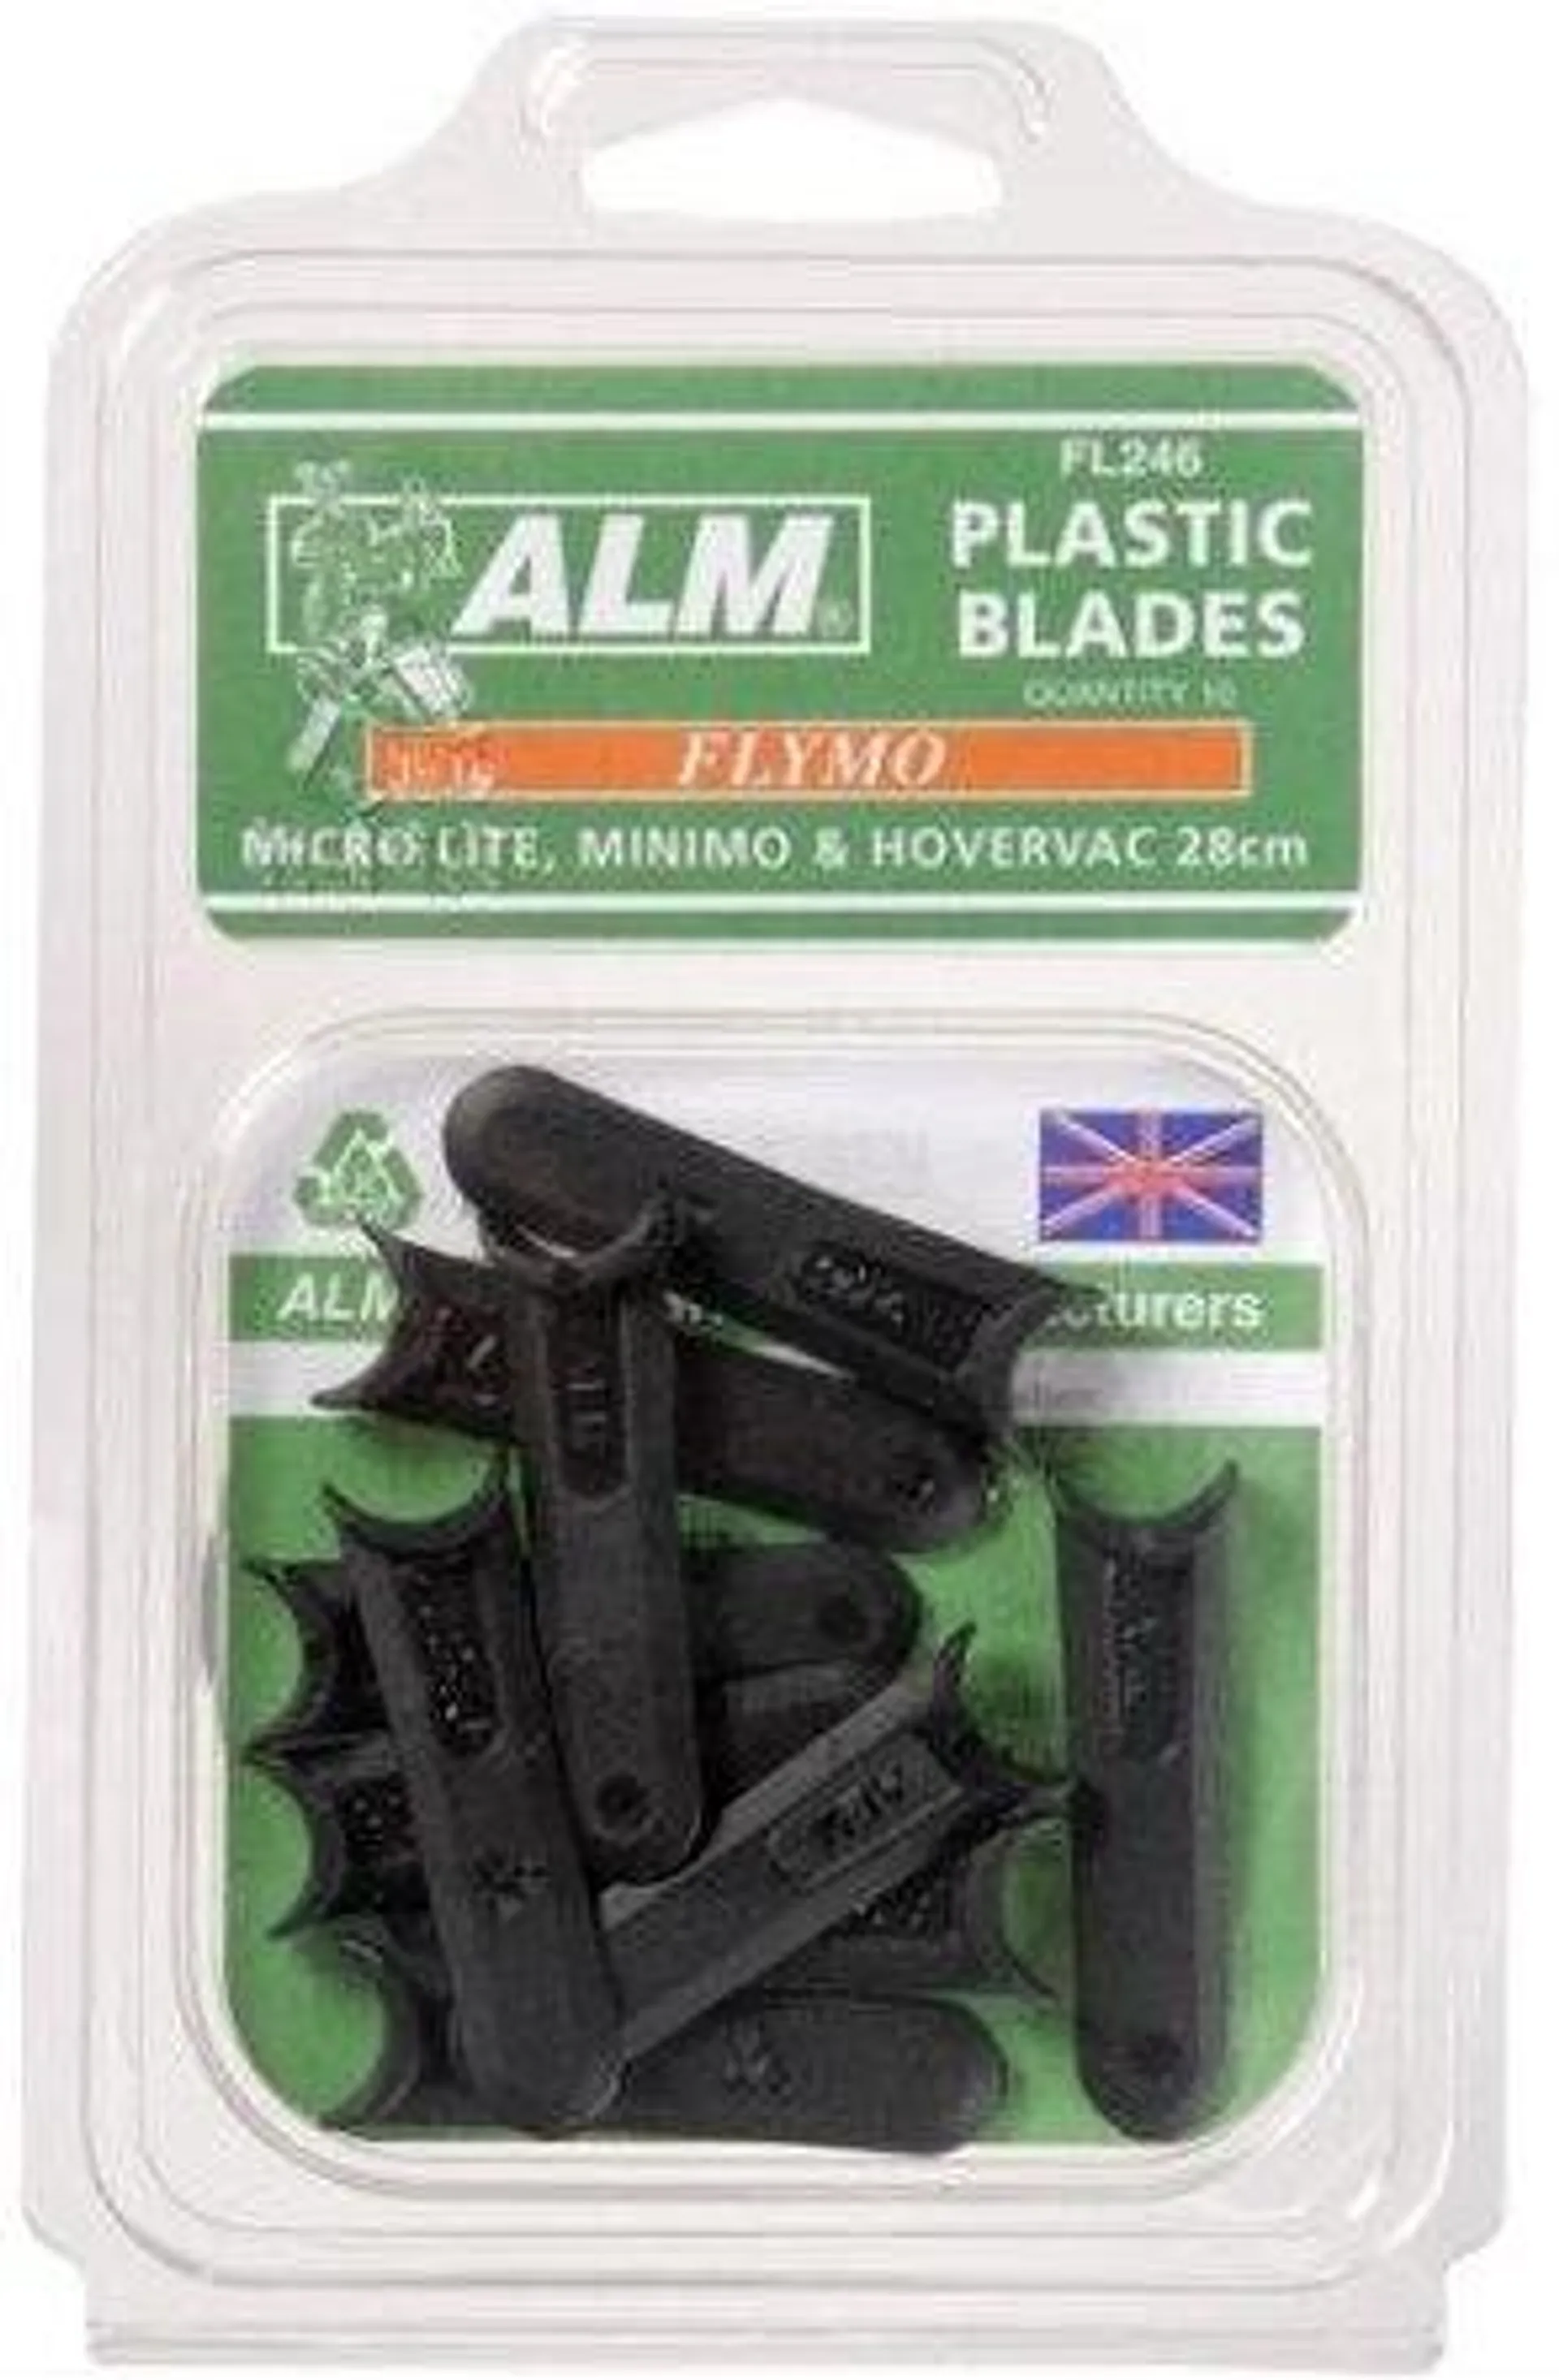 ALM FL246 10 X Plastic blades for Flymo